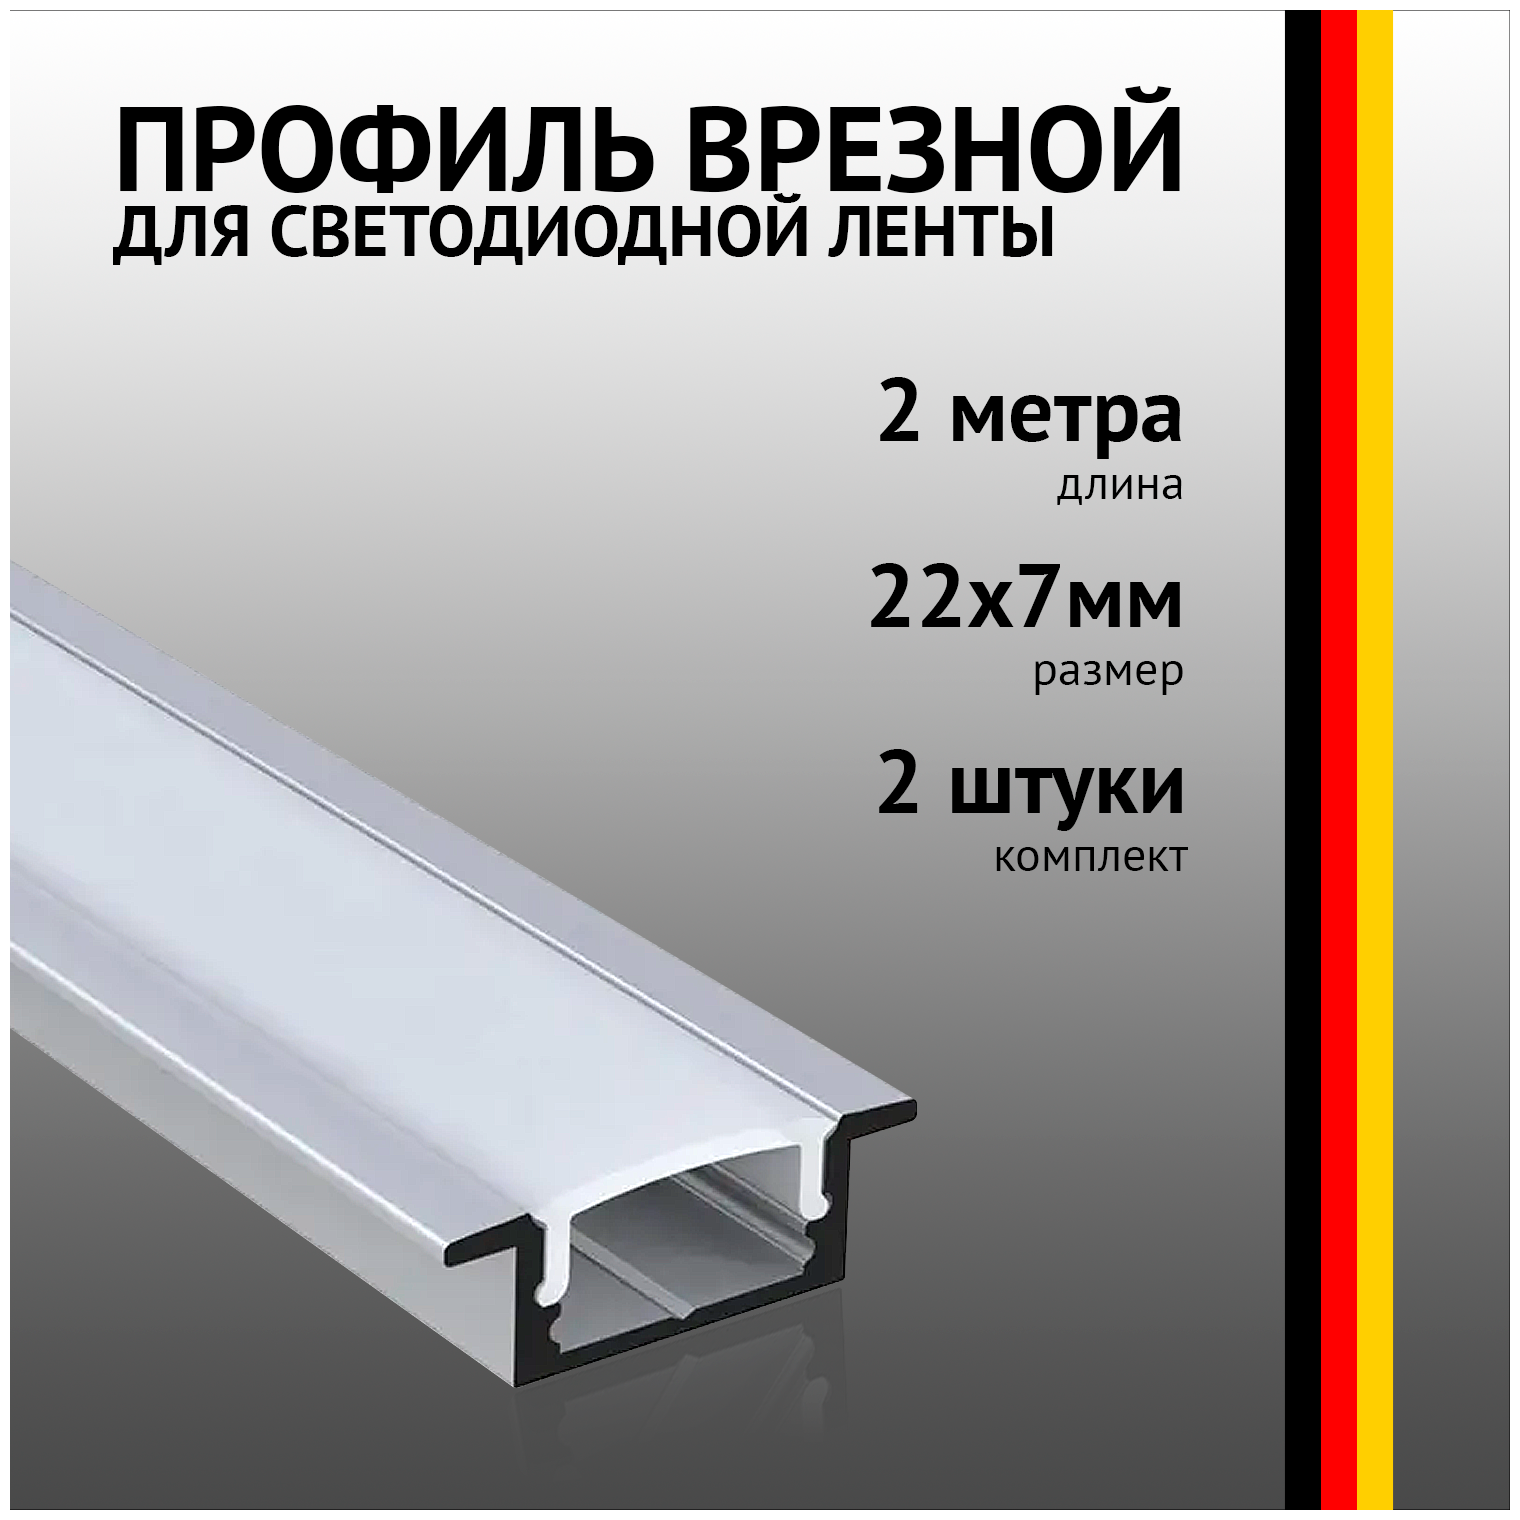 Профиль встраиваемый 2 метра (2 шт) алюминиевый 7*24,5 мм 2м для светодиодной ленты с рассеивателем